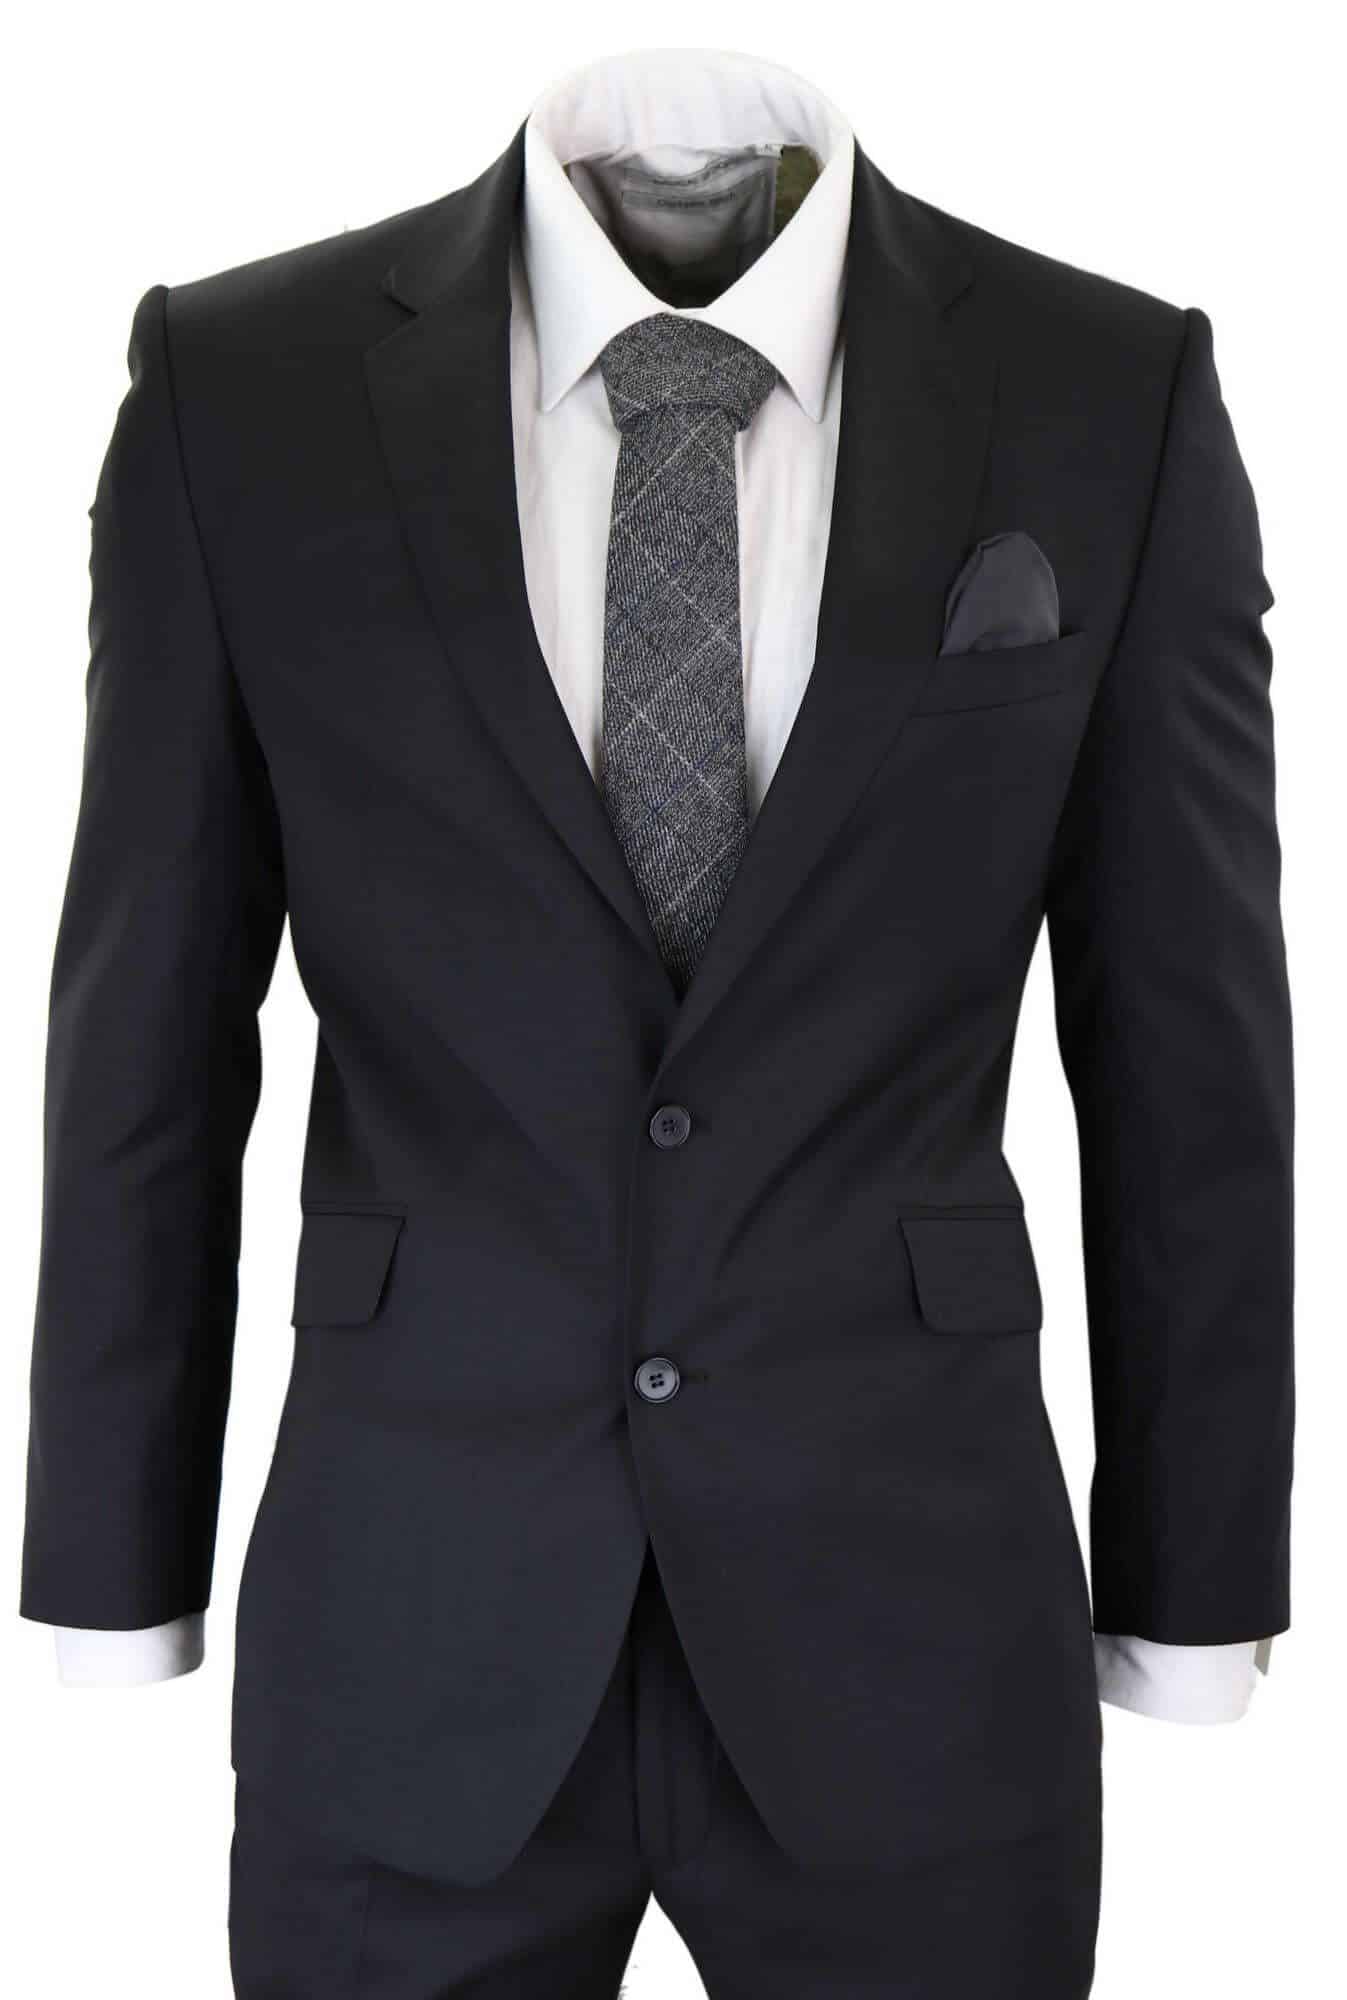 Mens Classic Plain Black Formal 2Piece Suit Buy Online Happy Gentleman